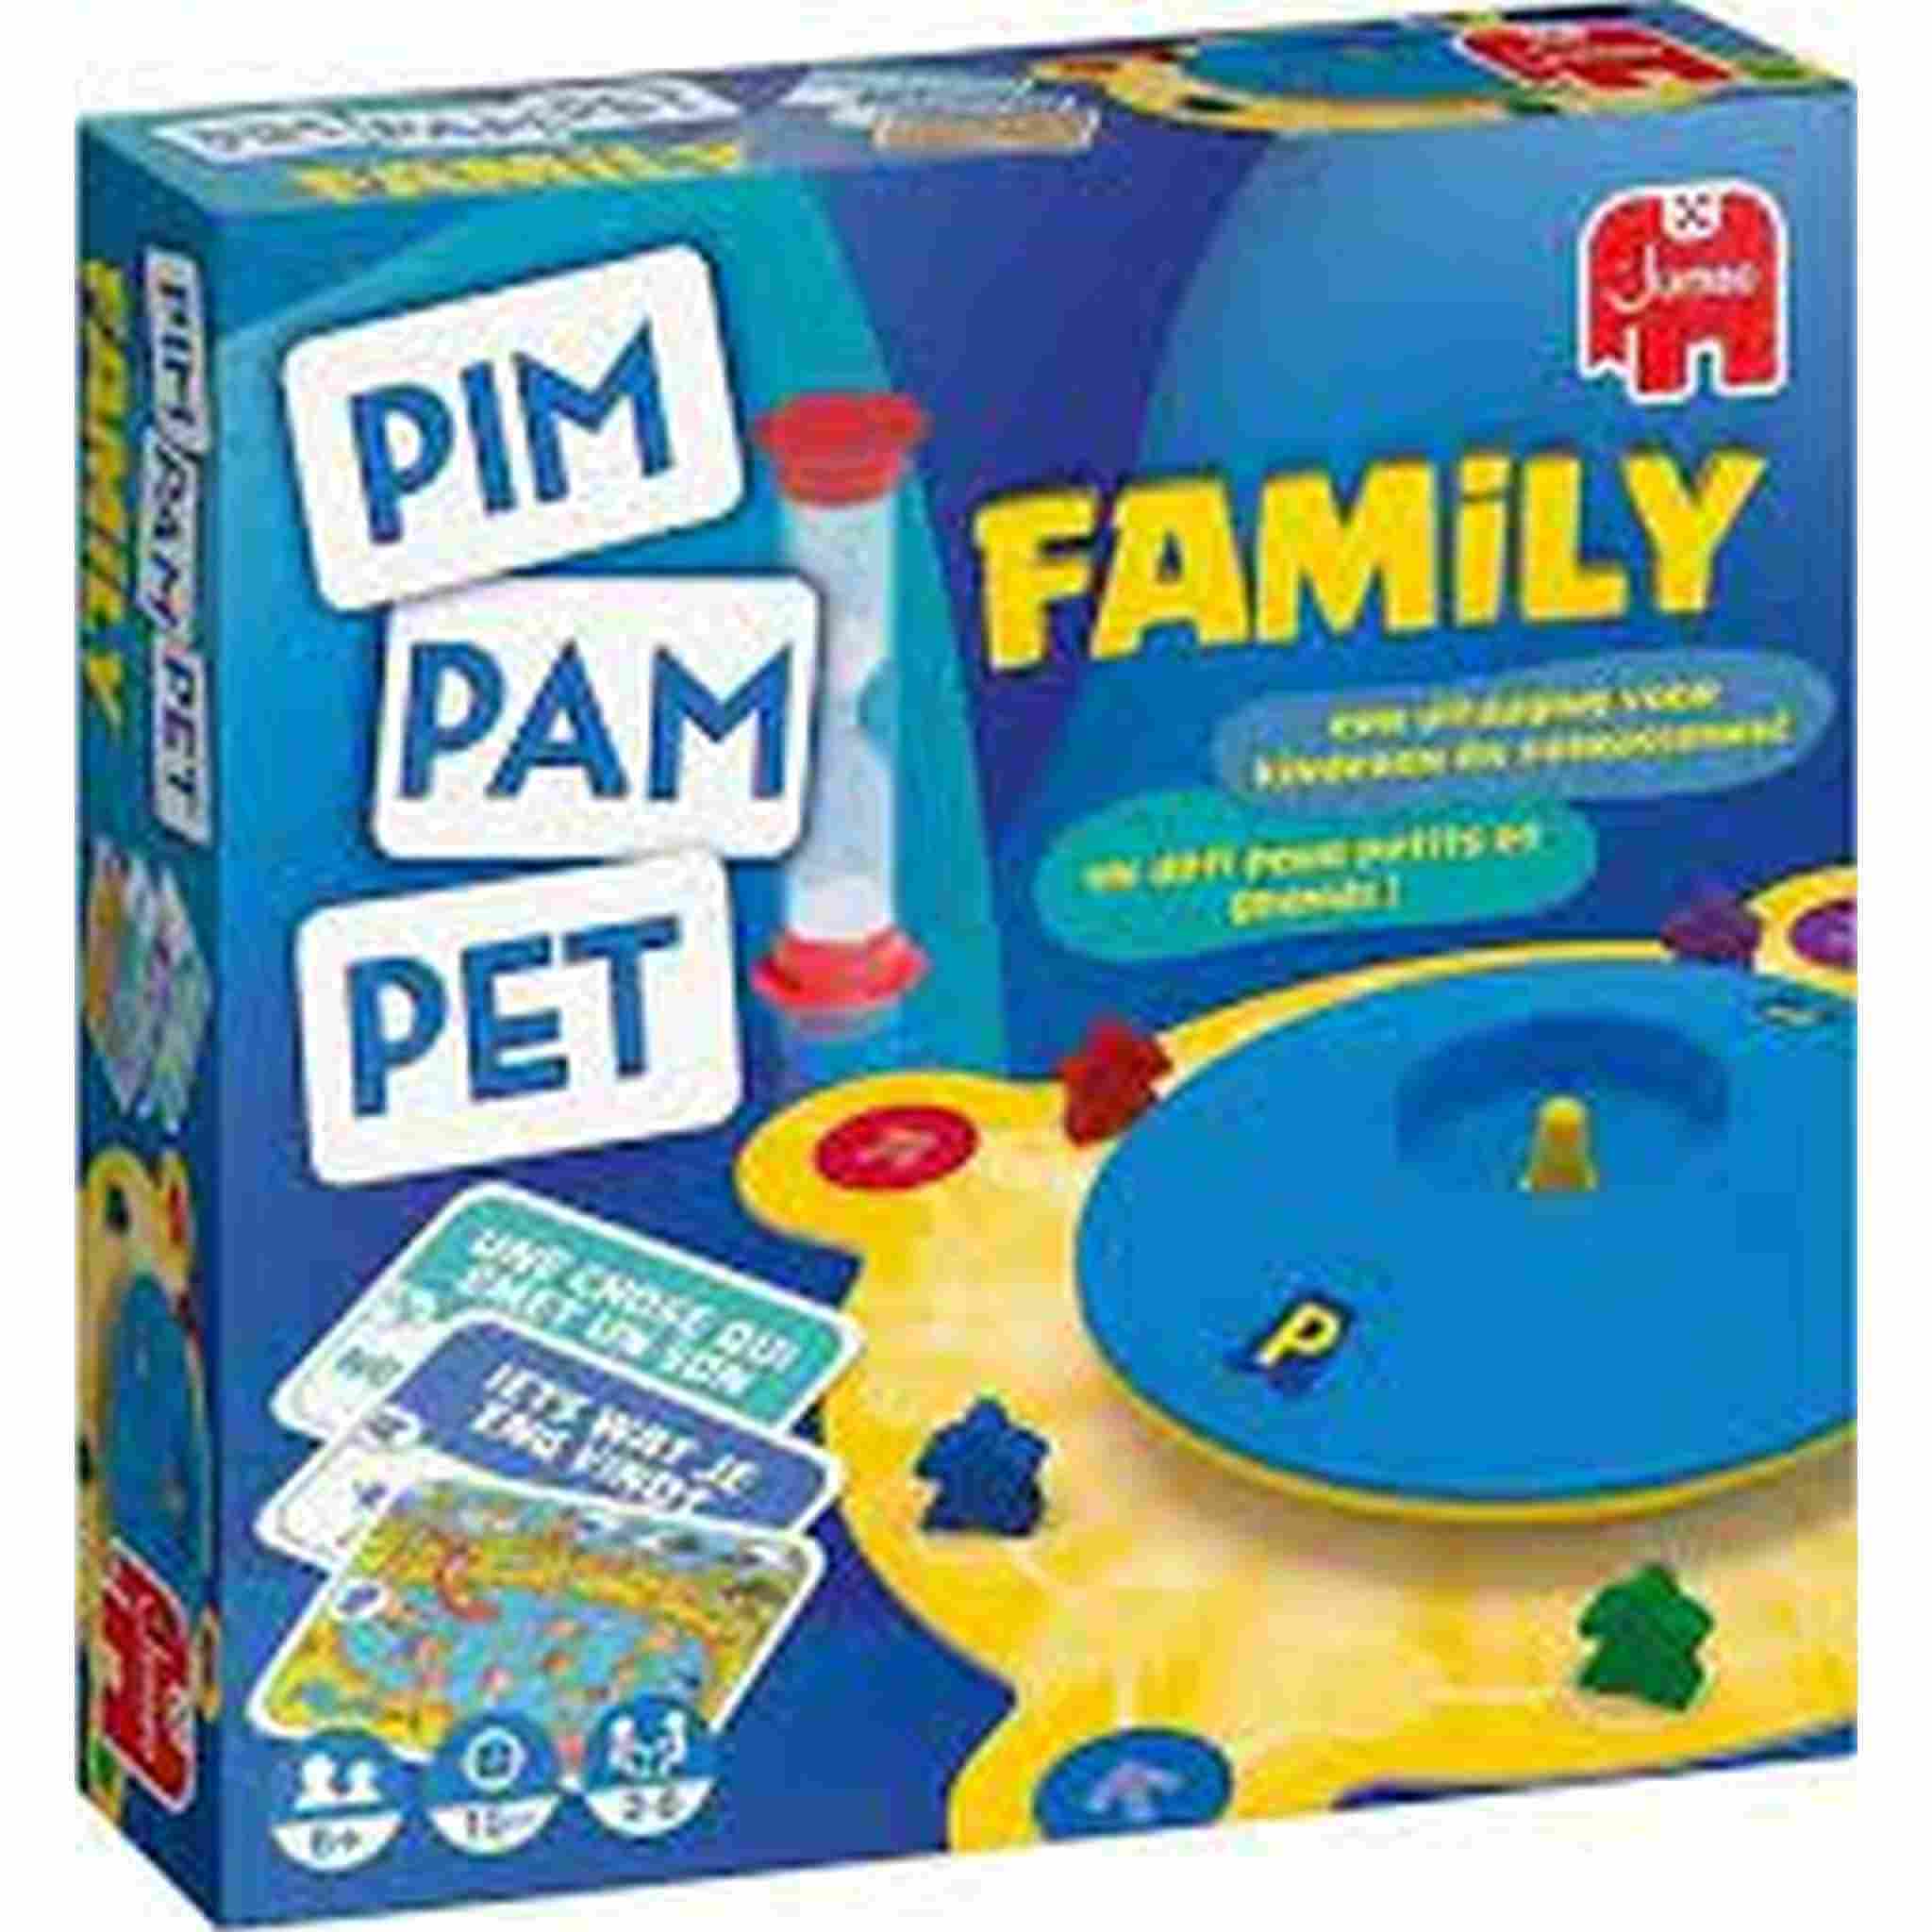 Aan Dicteren waarschijnlijk Pim Pam Pet Family - 19779 - Jumbo | Speldorado